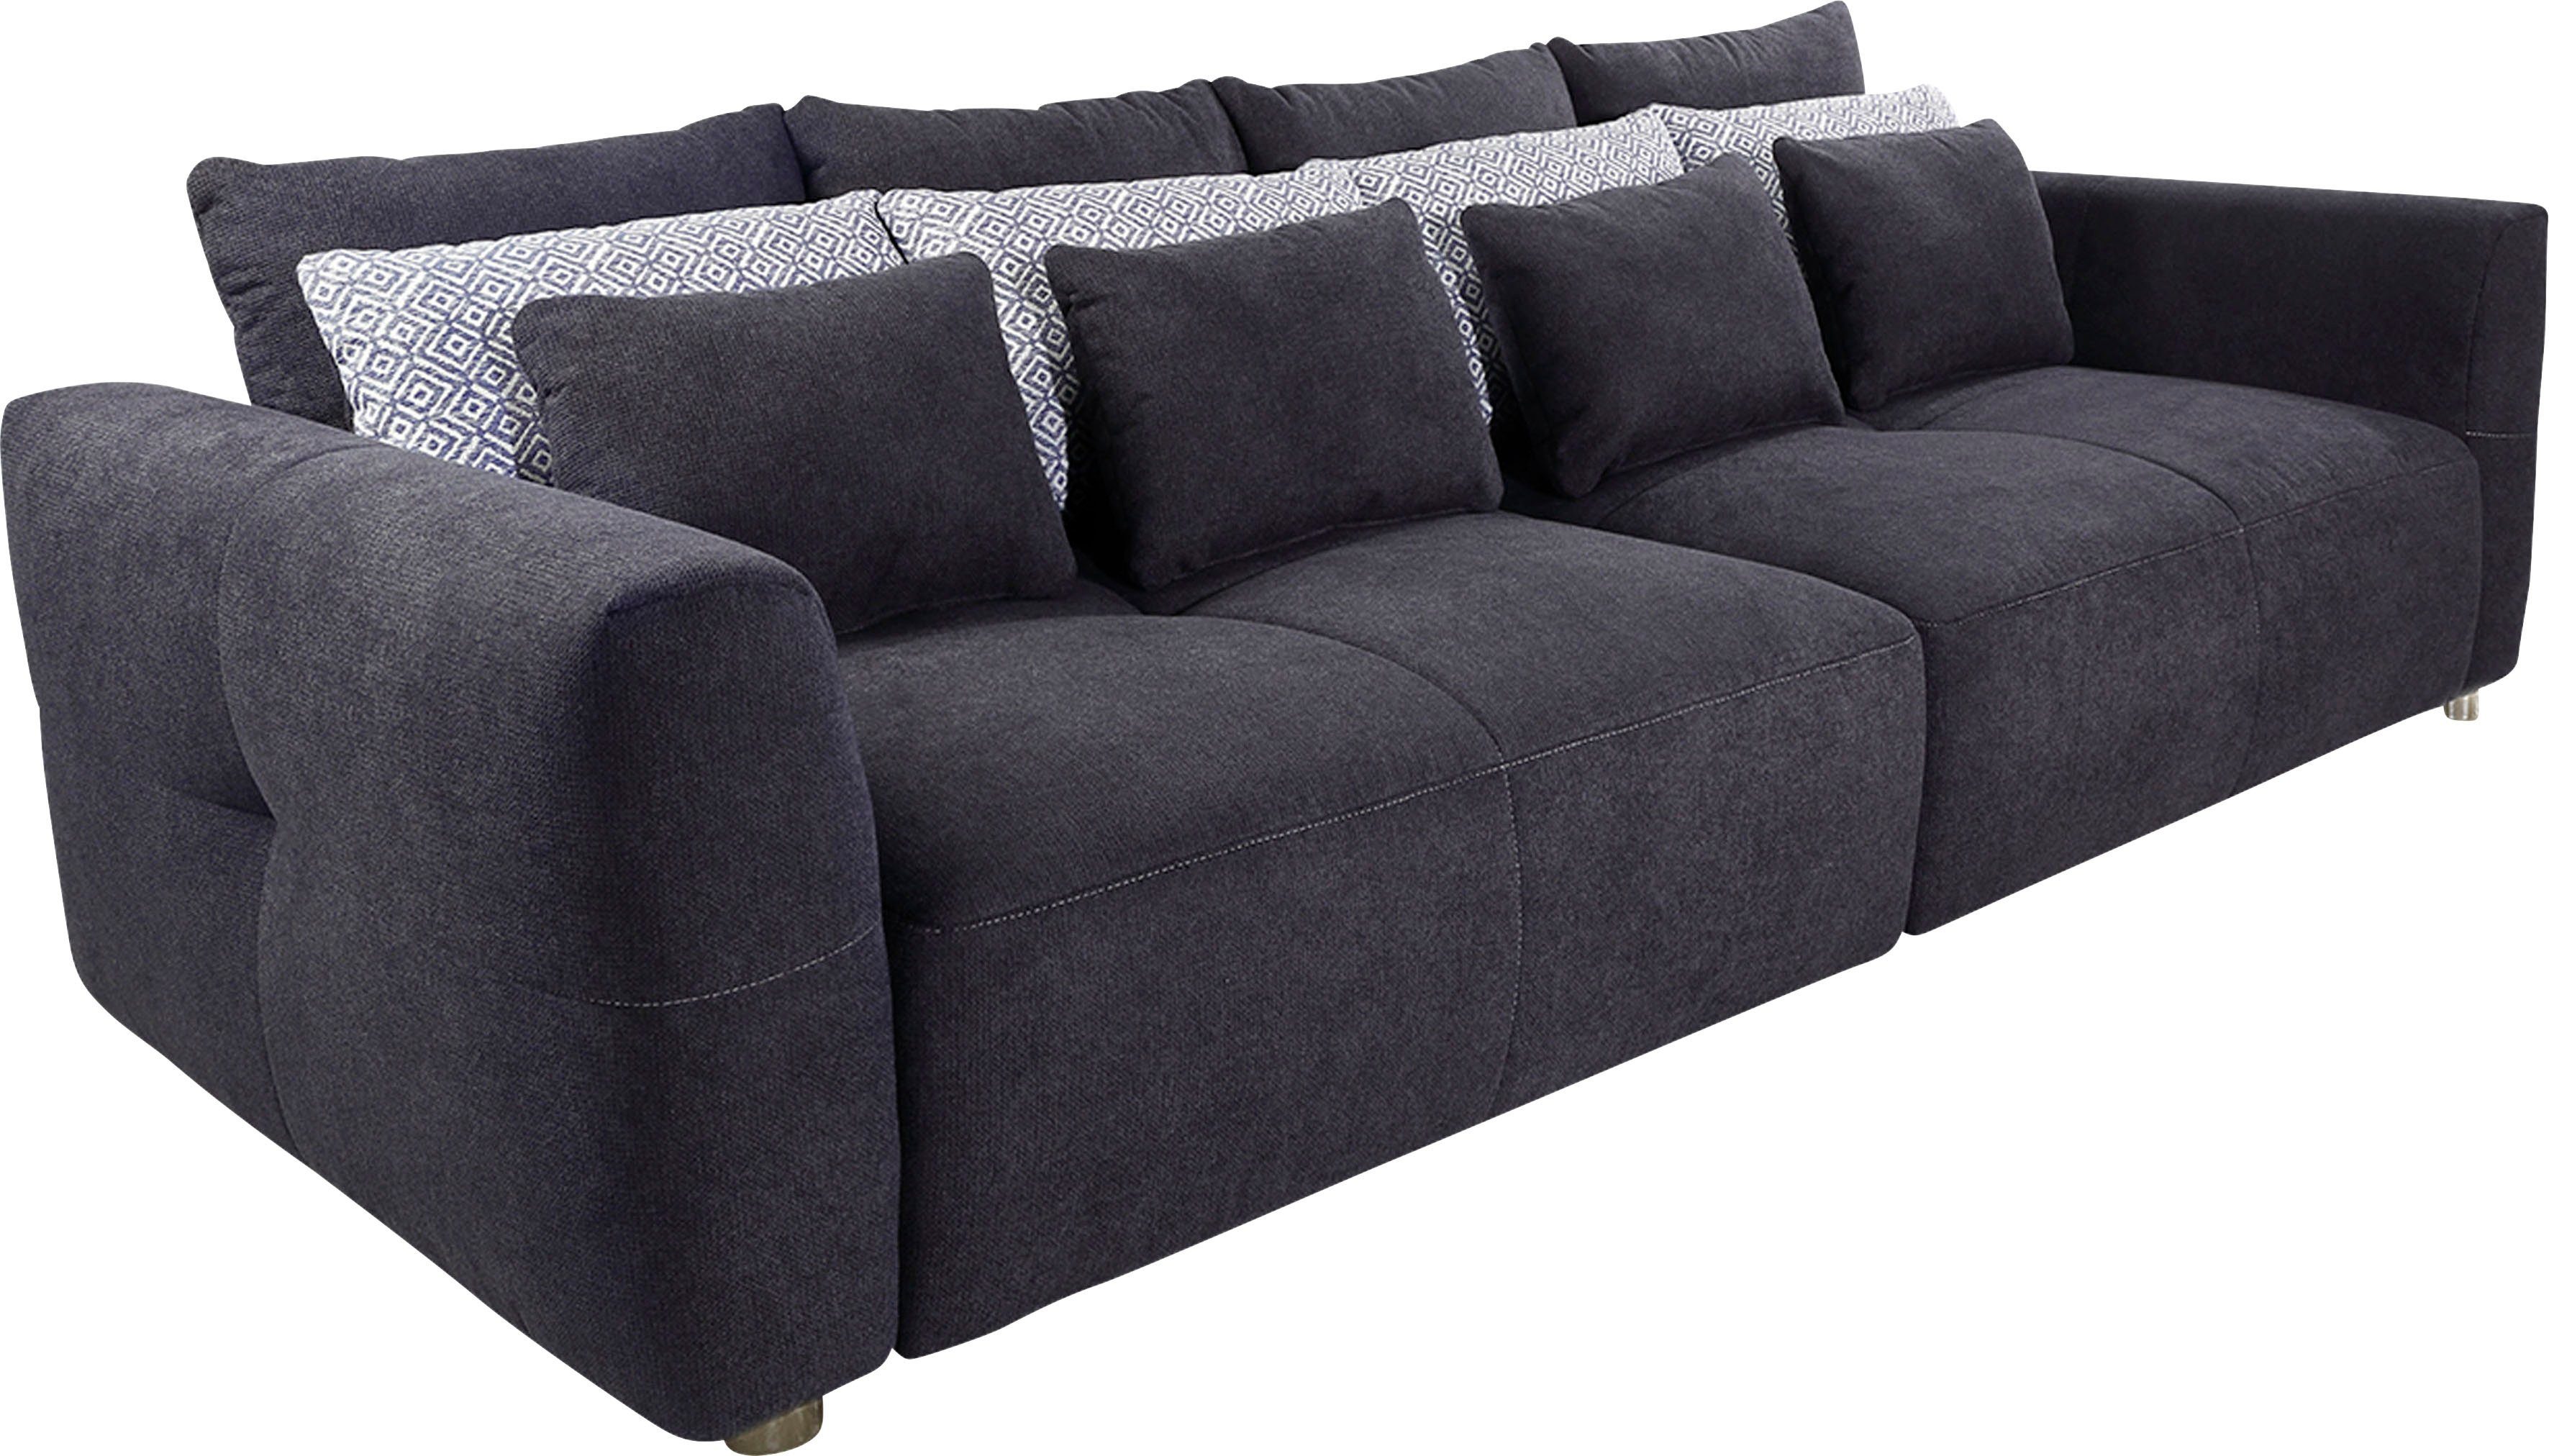 Gulliver, Jockenhöfer kuscheligen, mit Big-Sofa Federkernpolsterung dunkelblau dunkelblau Gruppe Sitzkomfort angenehmen | für